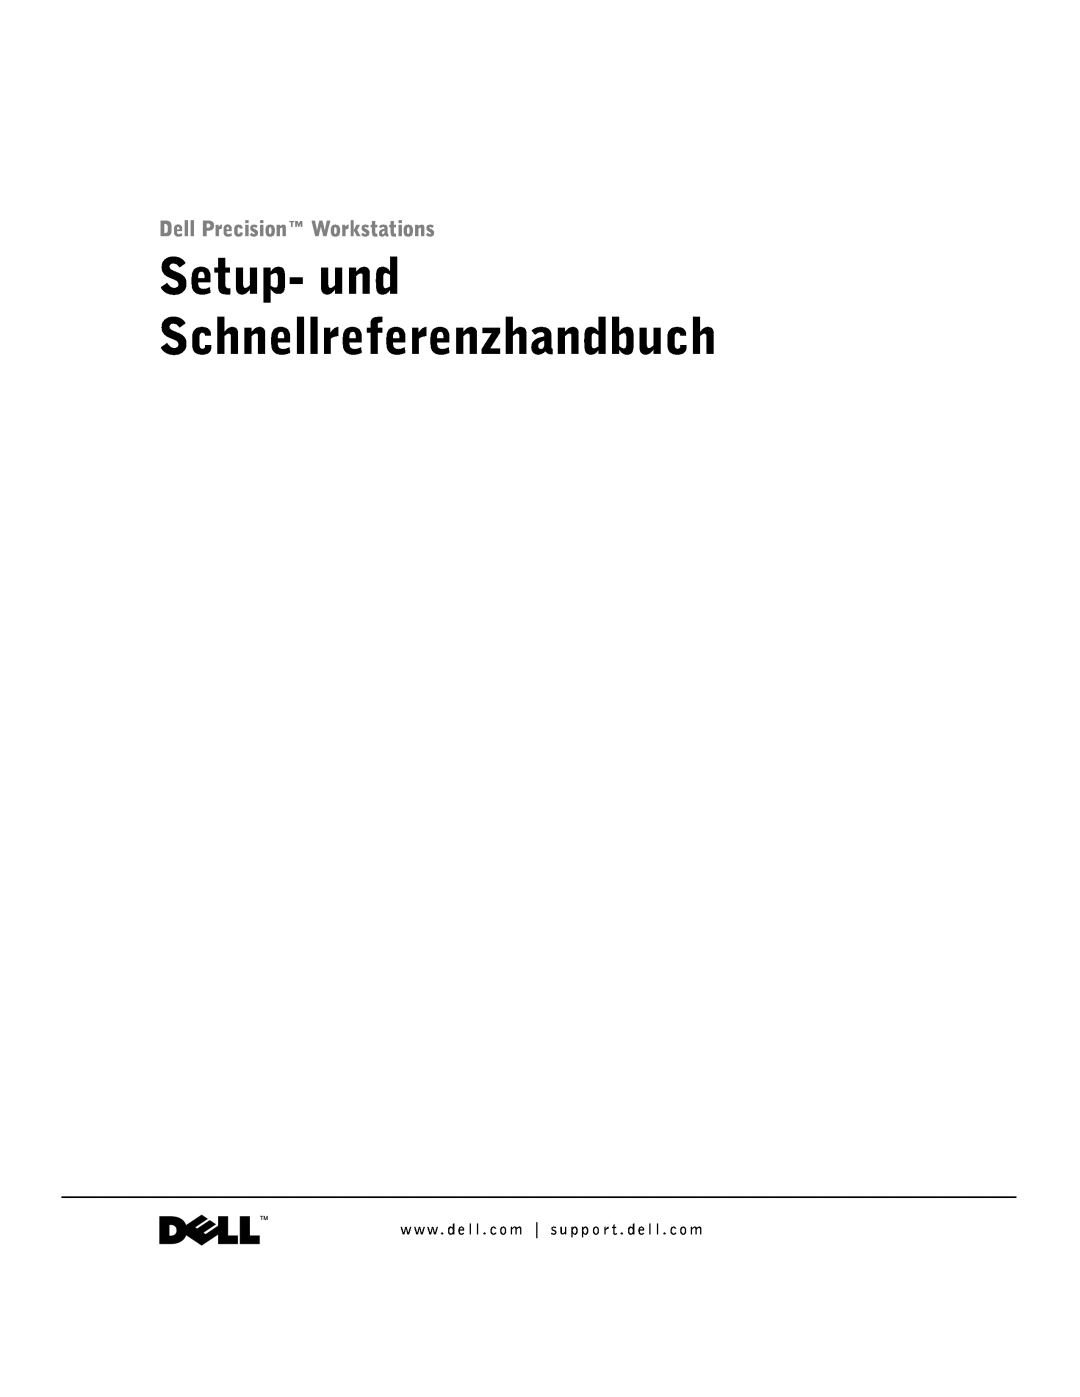 Dell 1G155 manual Setup- und Schnellreferenzhandbuch, Dell Precision Workstations 